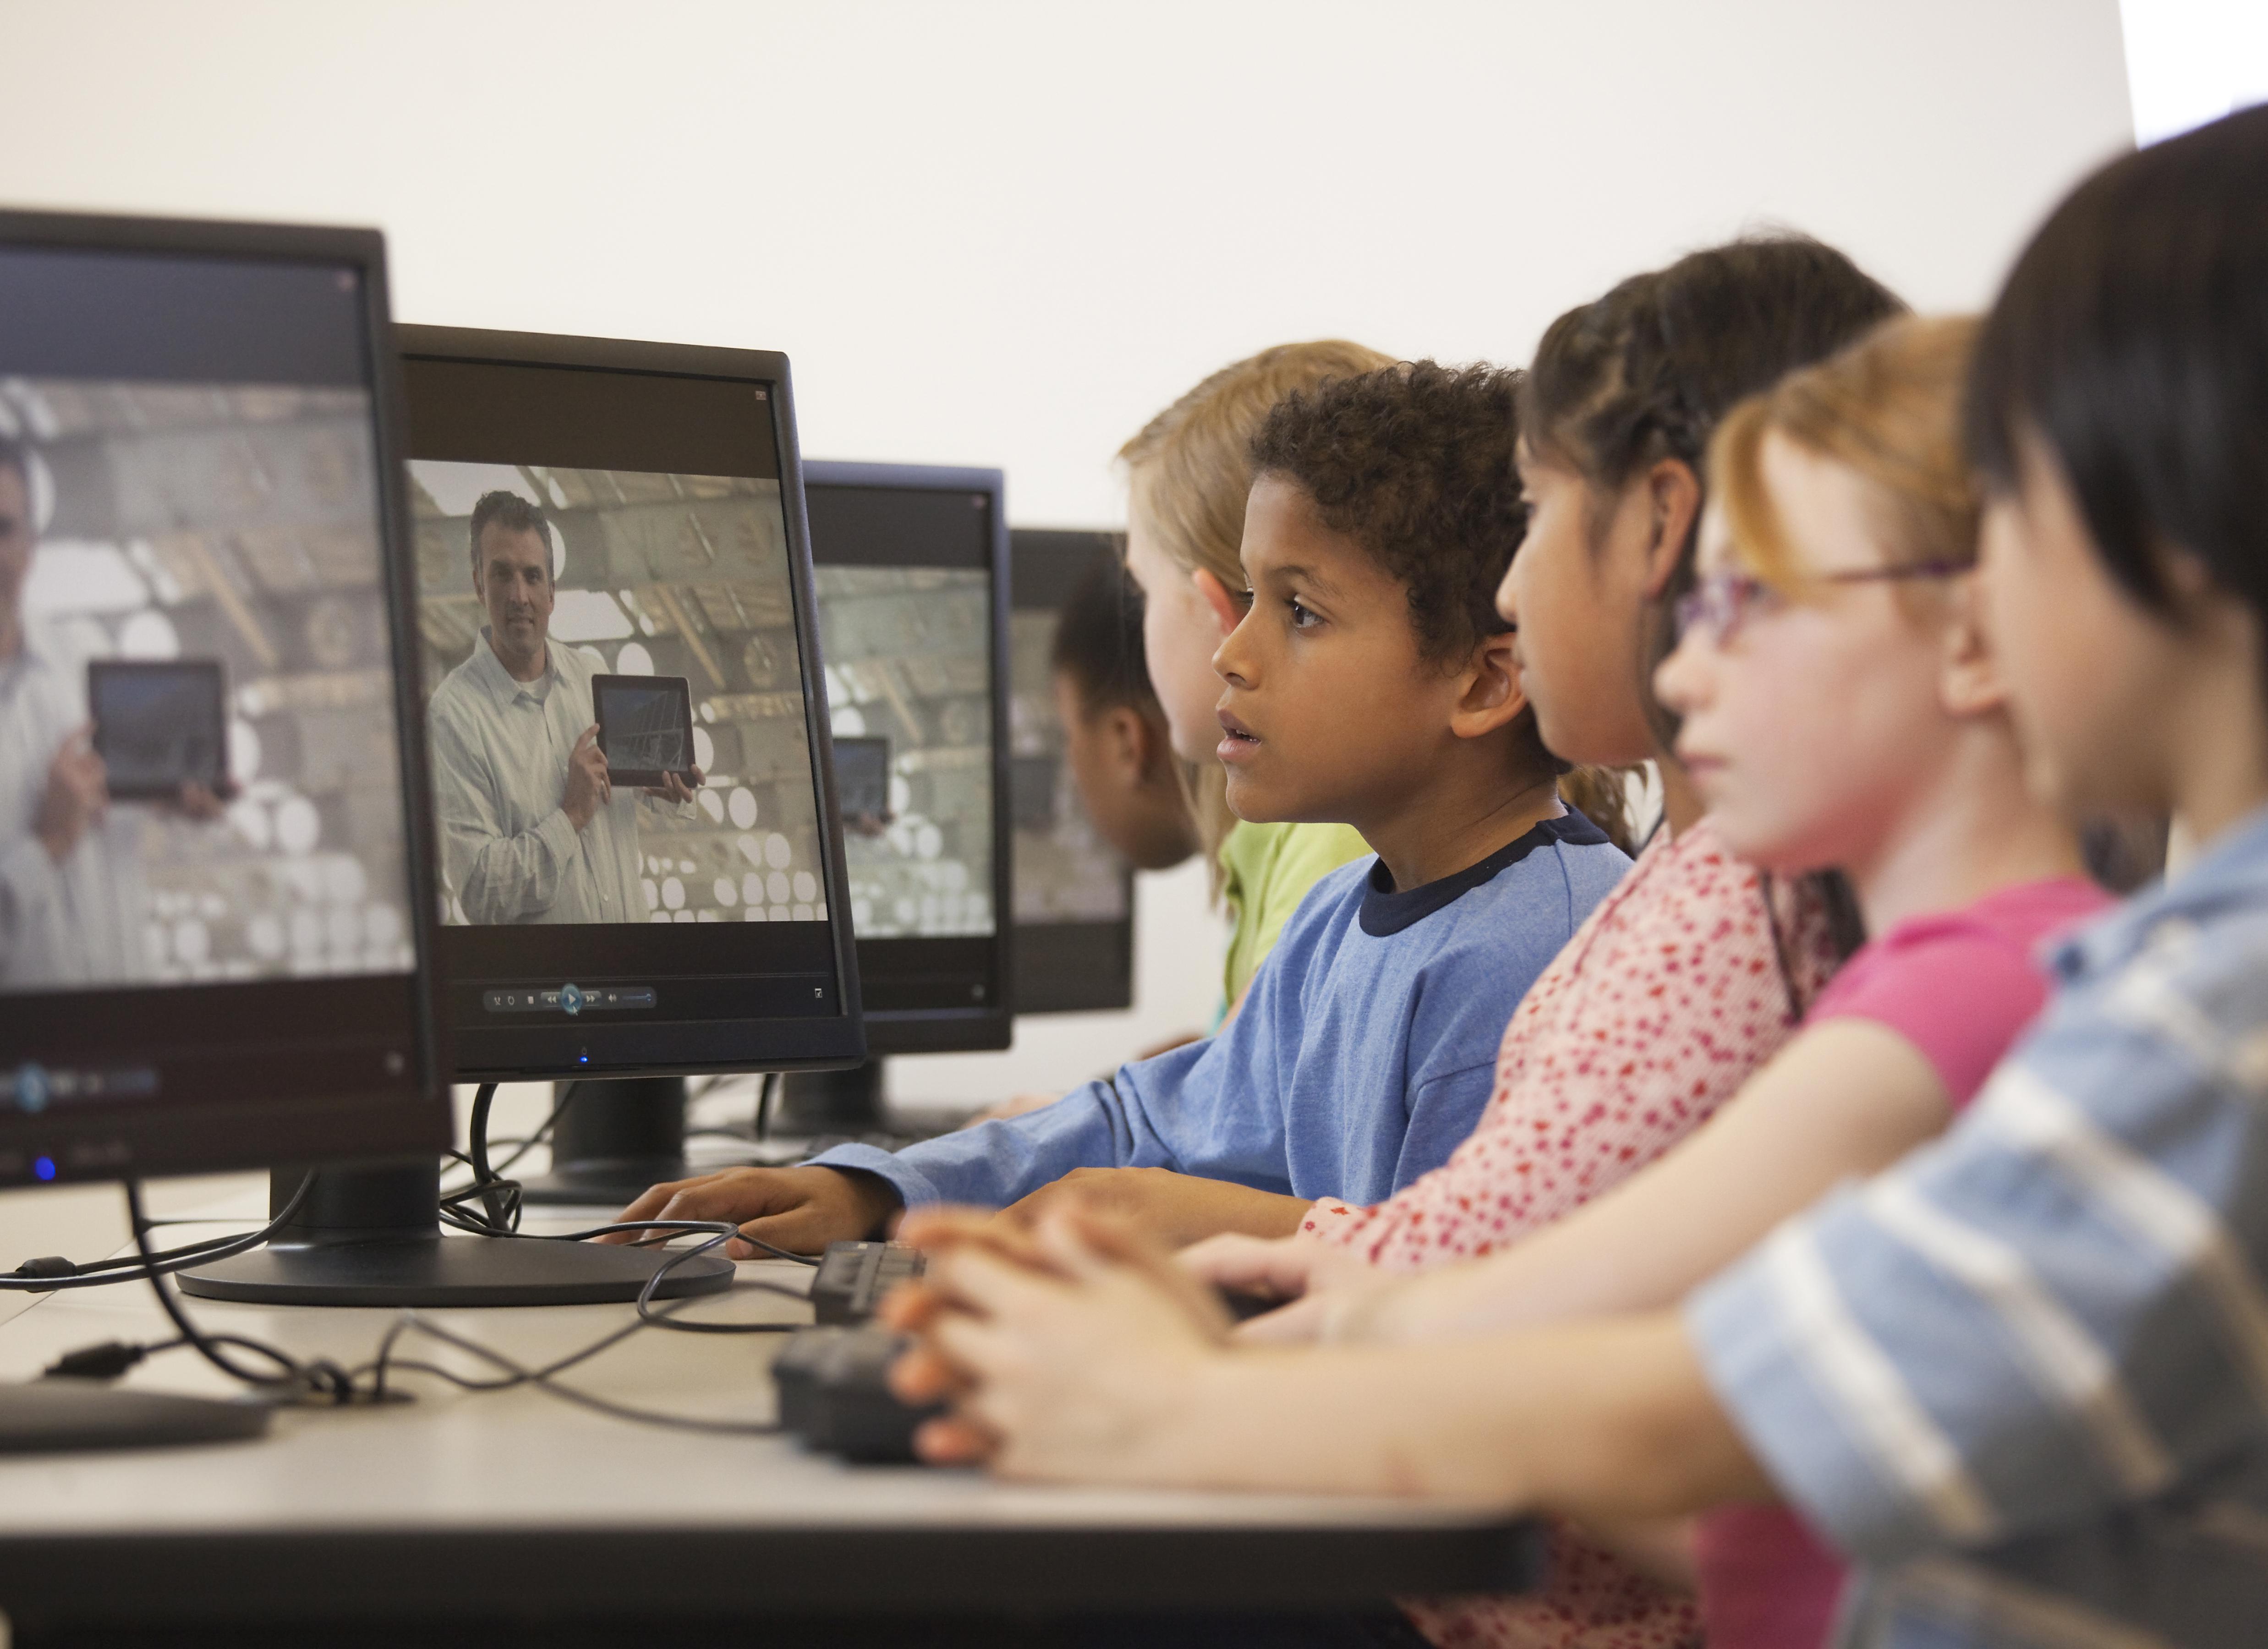 Children watching online instruction in computer lab